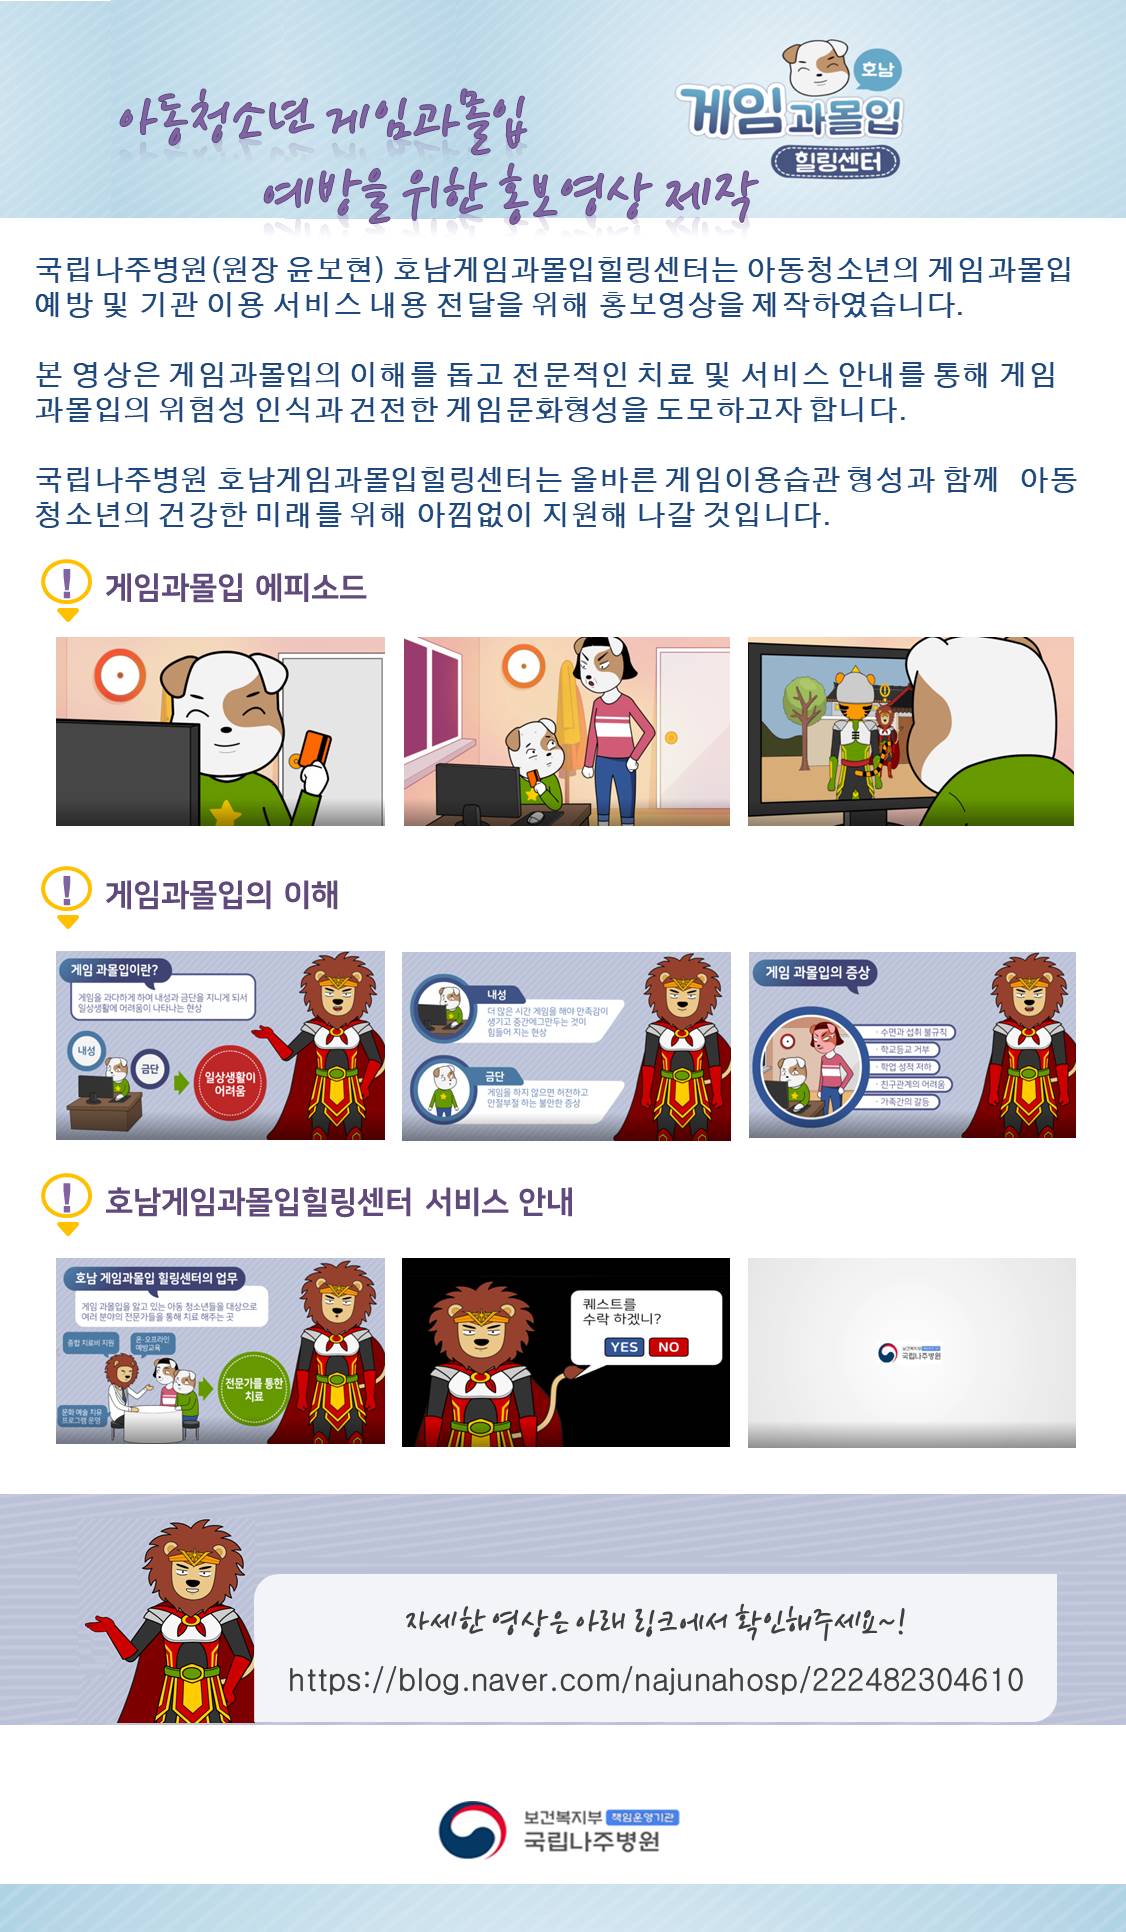 아동청소년 게임과몰입 예방을 위한 홍보 영상 제작